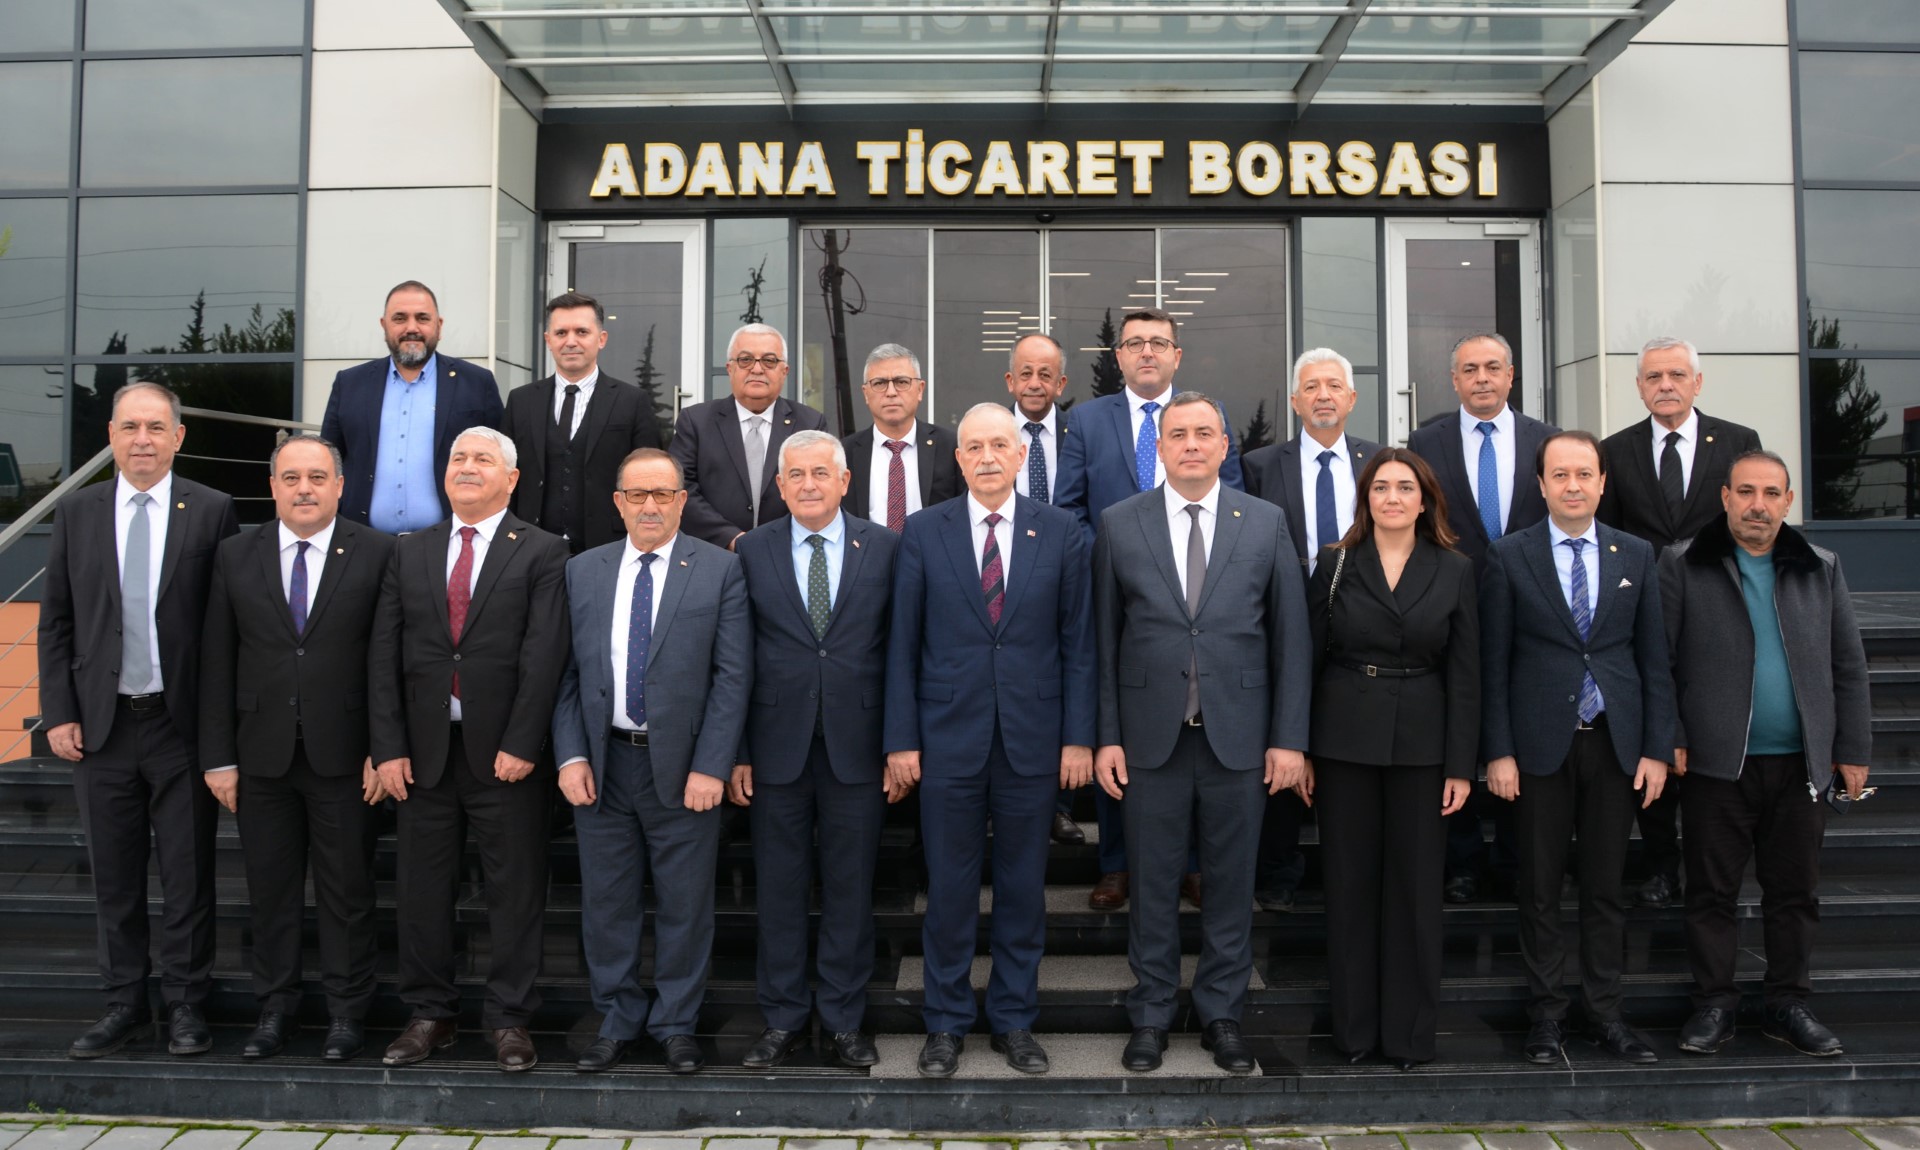 Aydın Ticaret Borsası ve Adana Ticaret Borsası Kardeşlik Protokolü İmzaladı